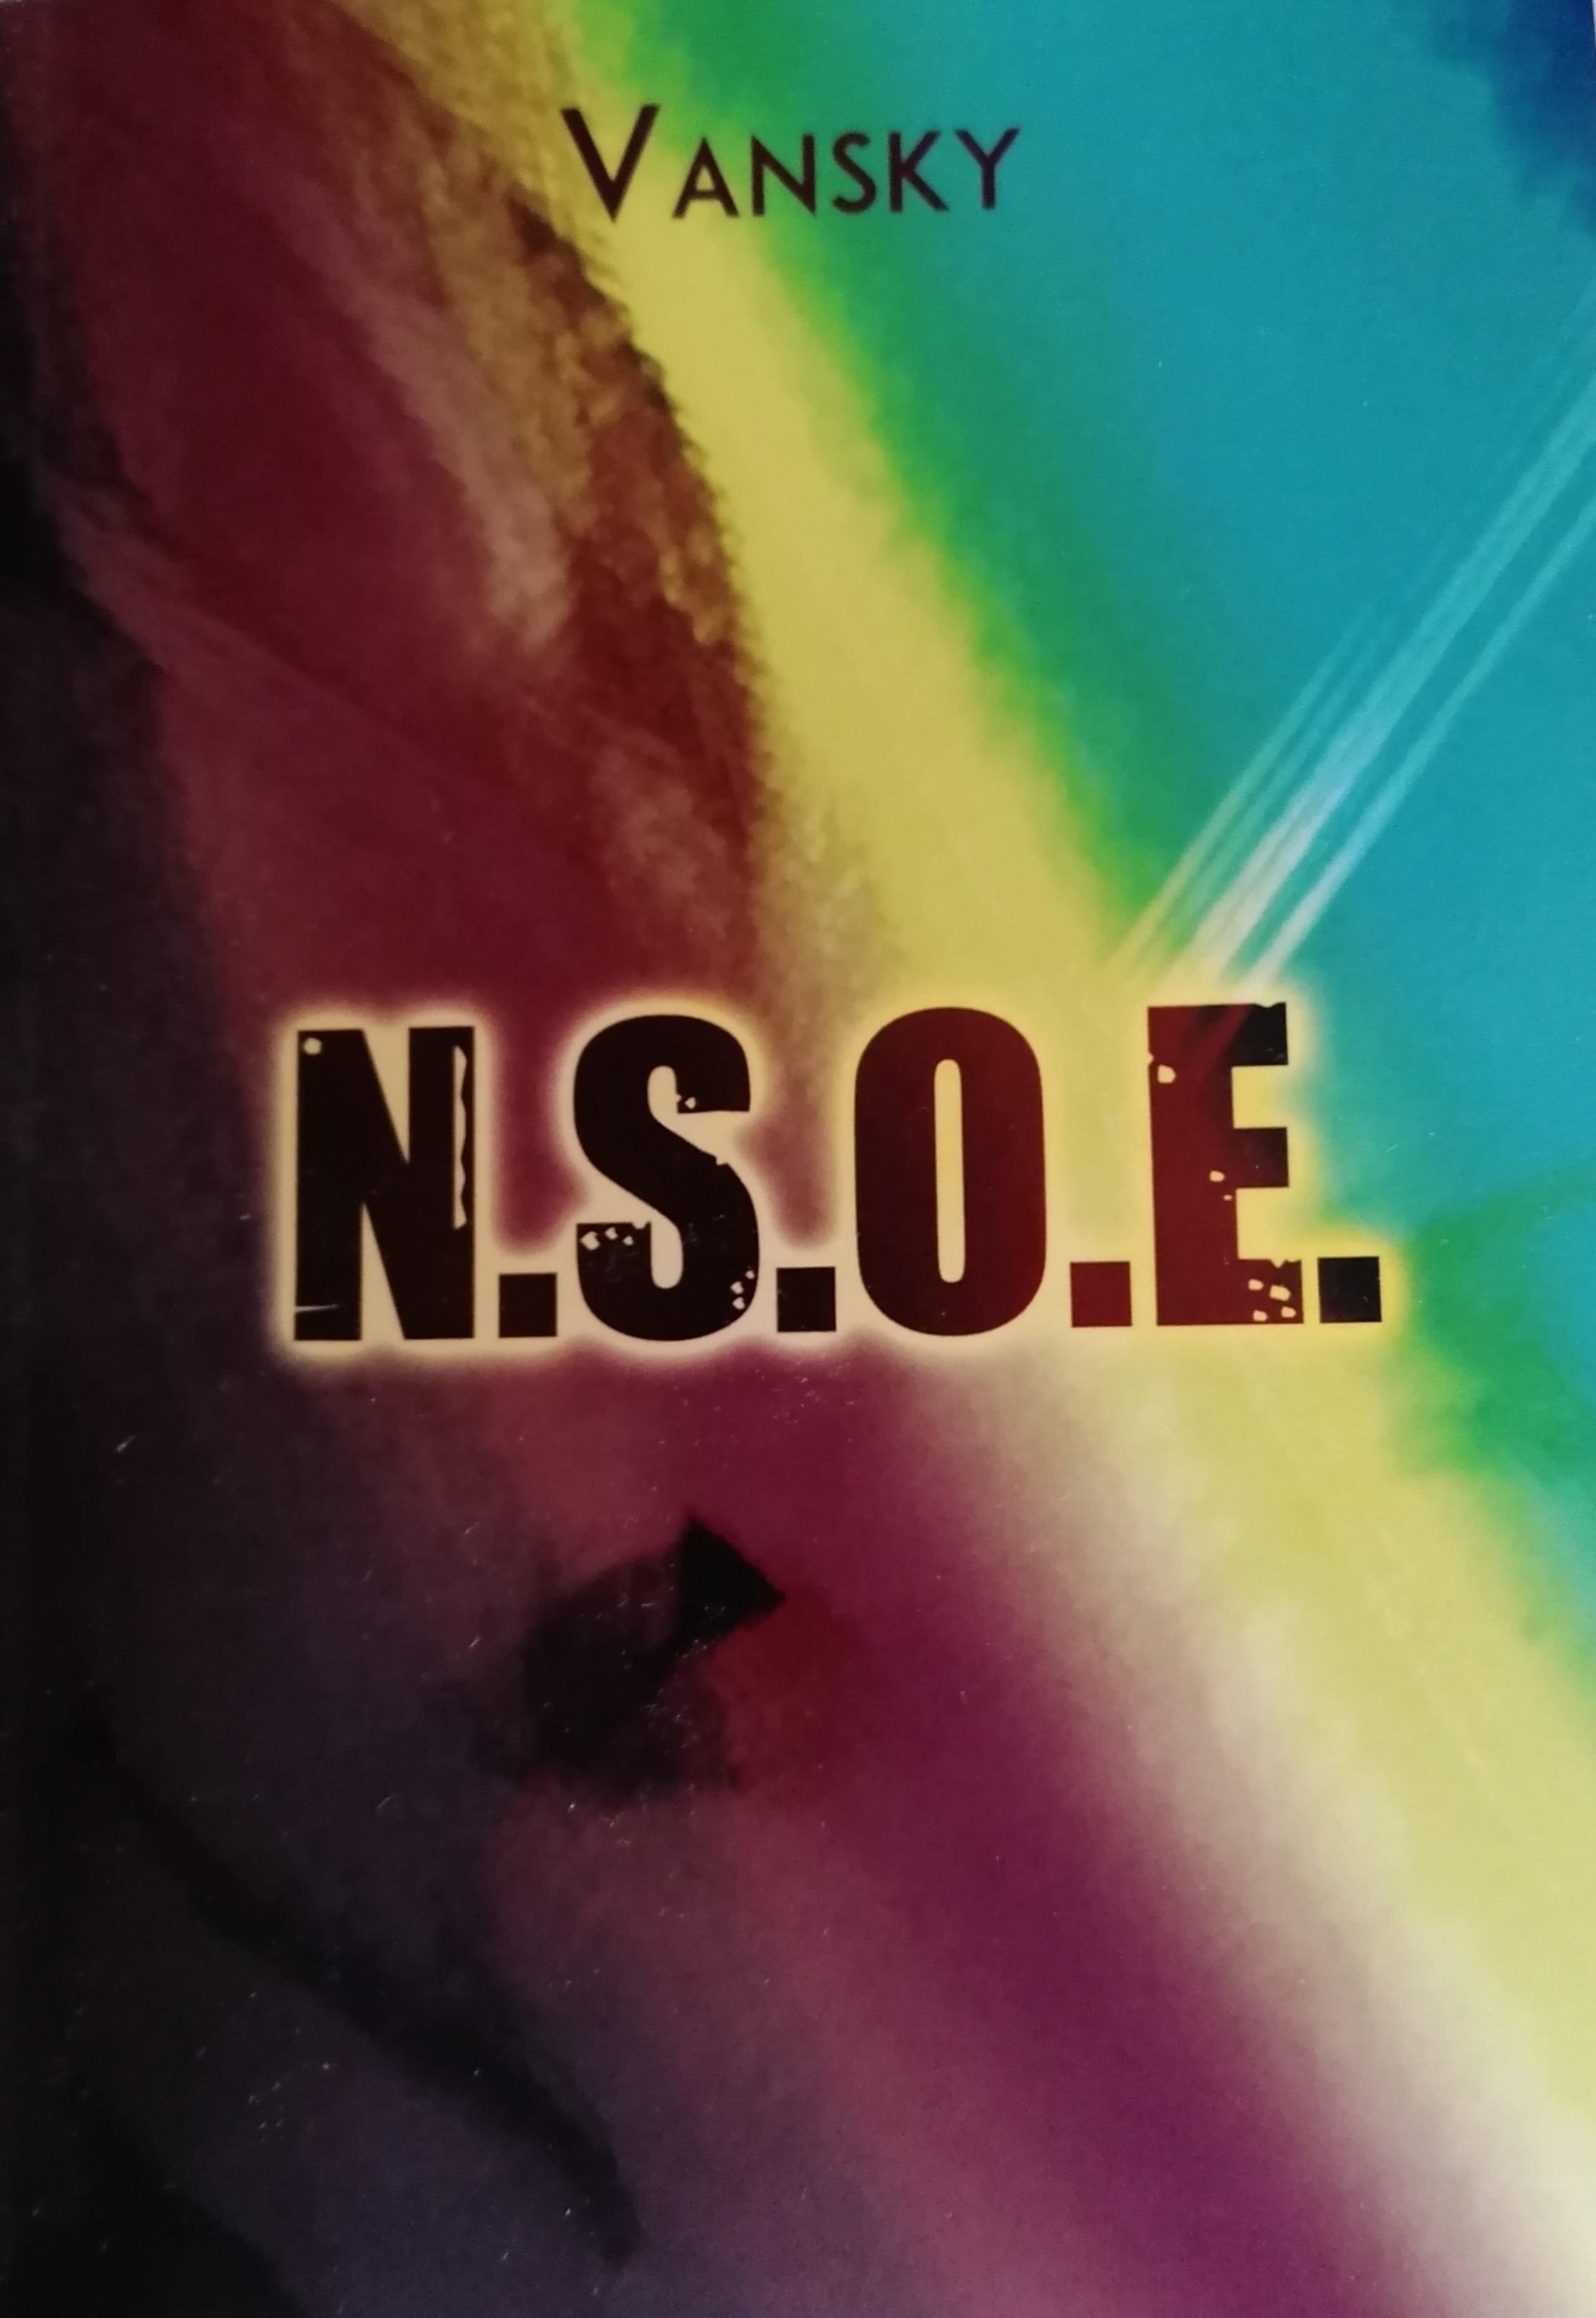  “N. S. O. E.”, il nuovo romanzo di Vansky